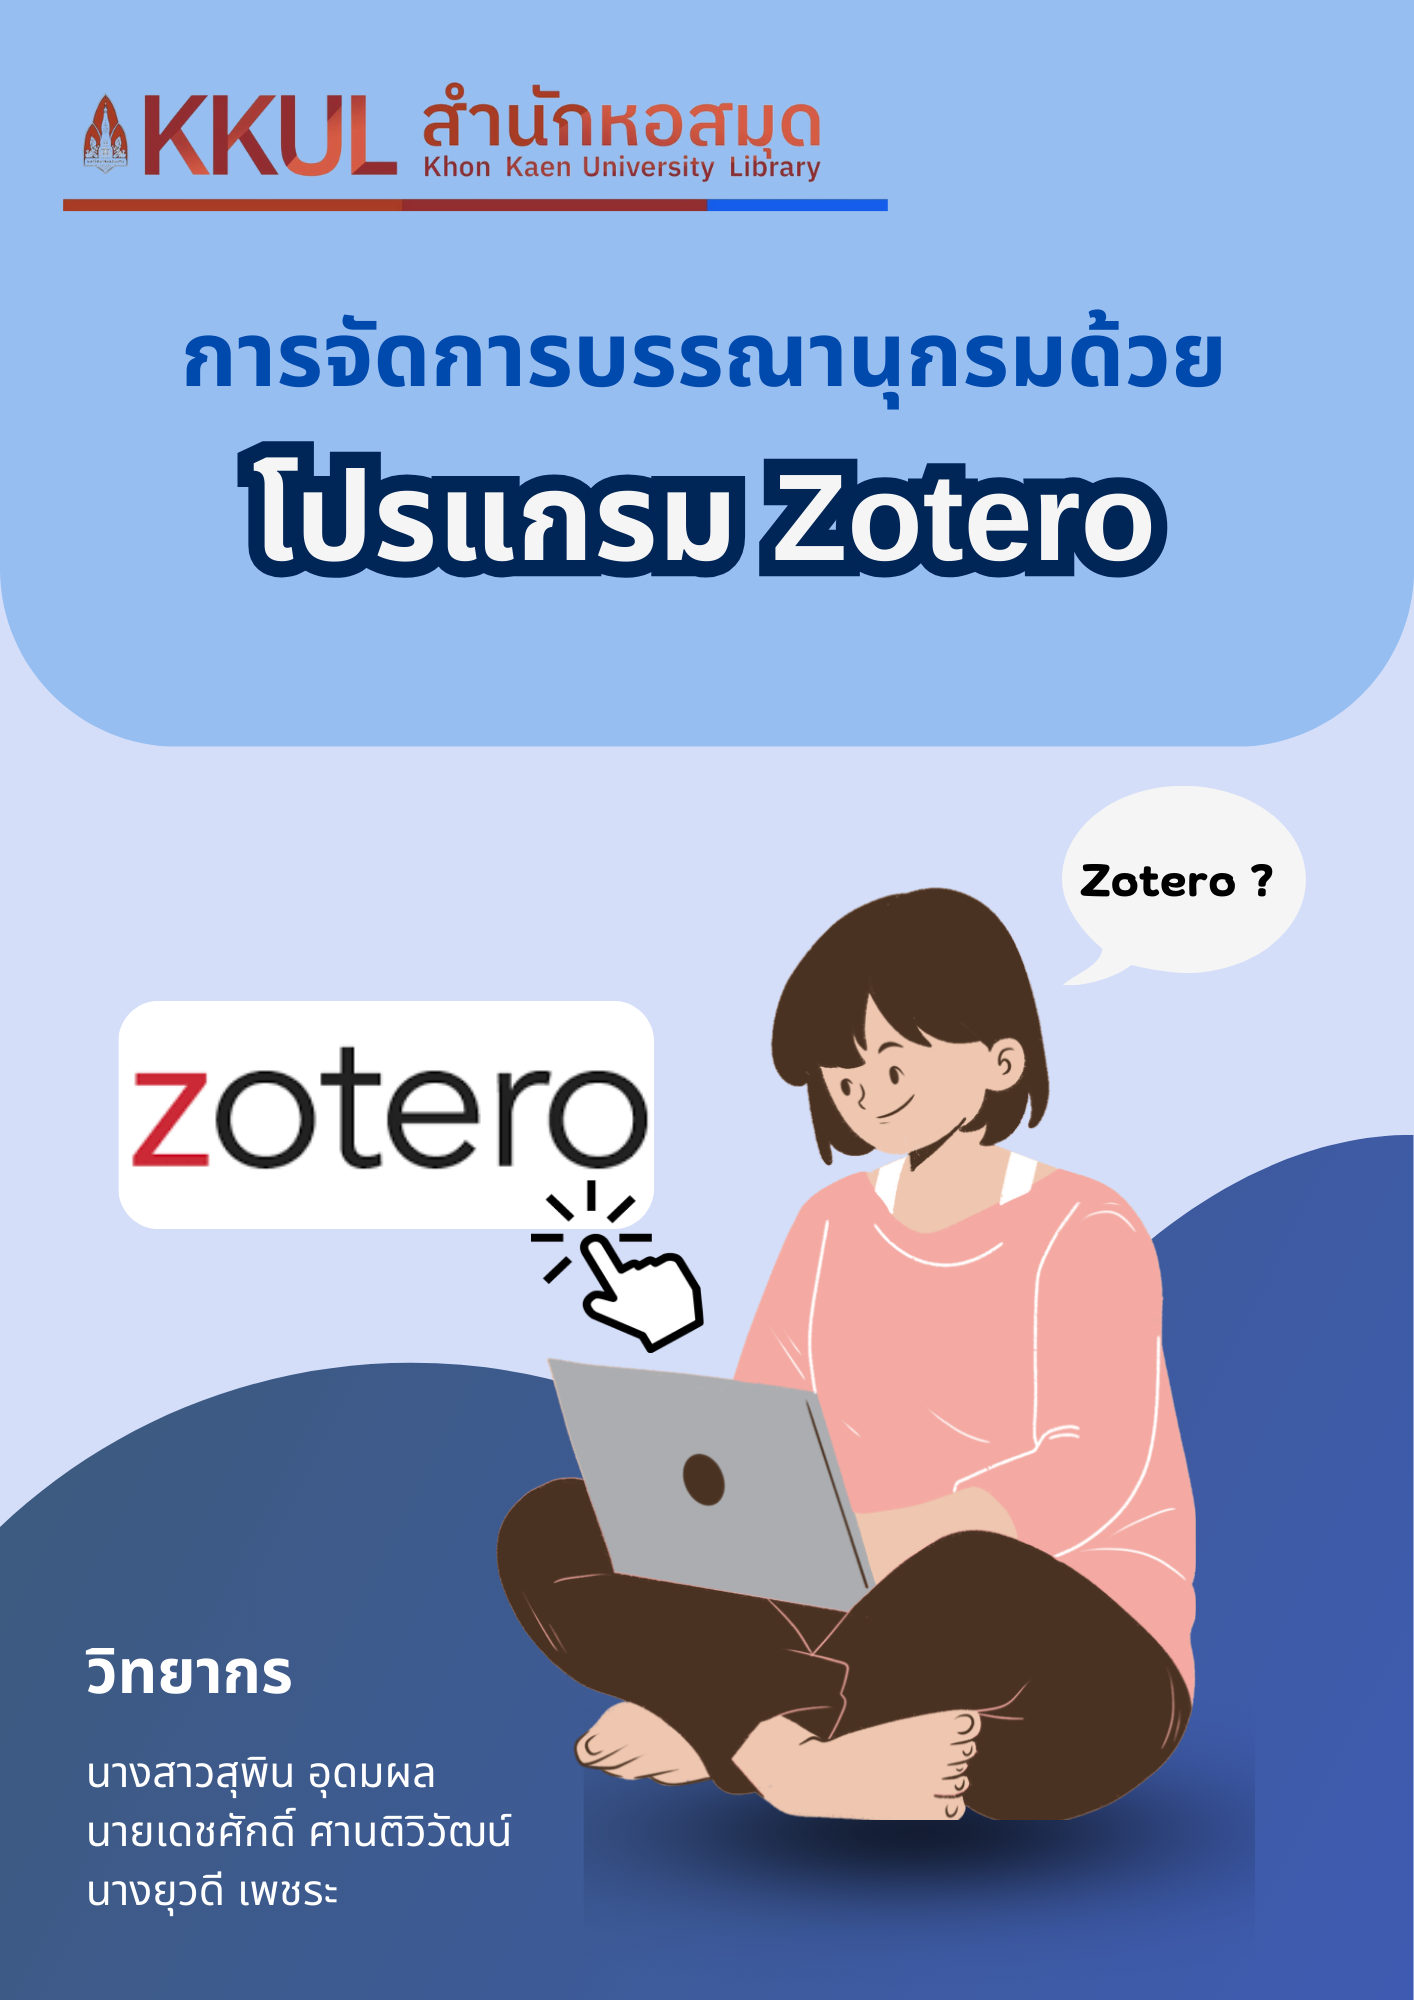 การจัดการบรรณานุกรมด้วยโปรแกรม Zotero